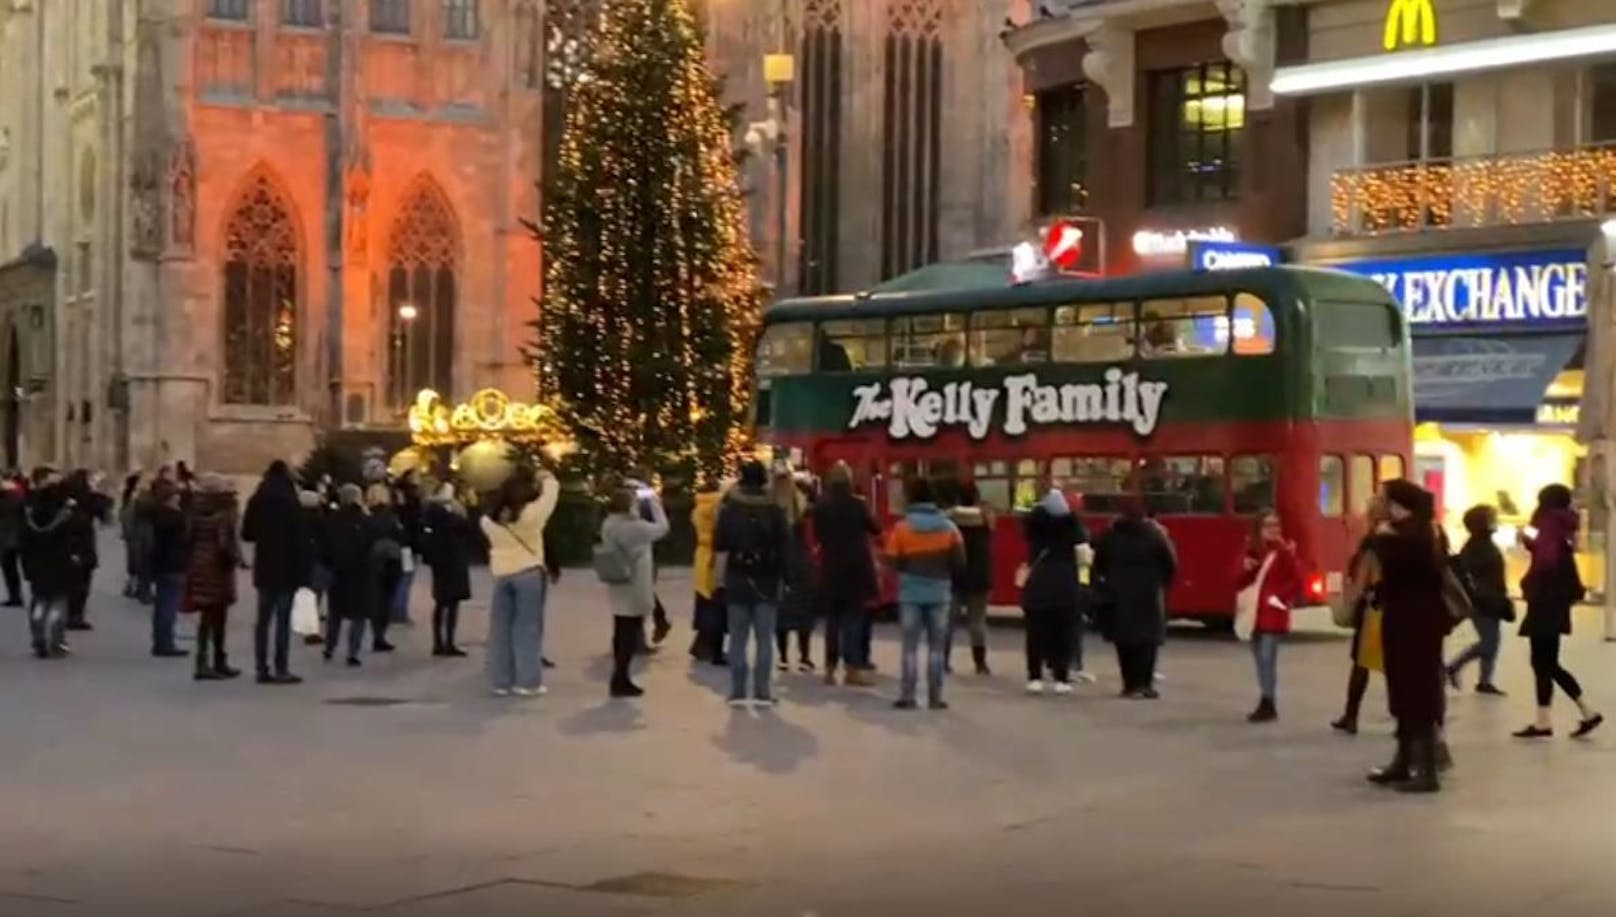 Kelly Family trotz Lockdown in Wien unterwegs